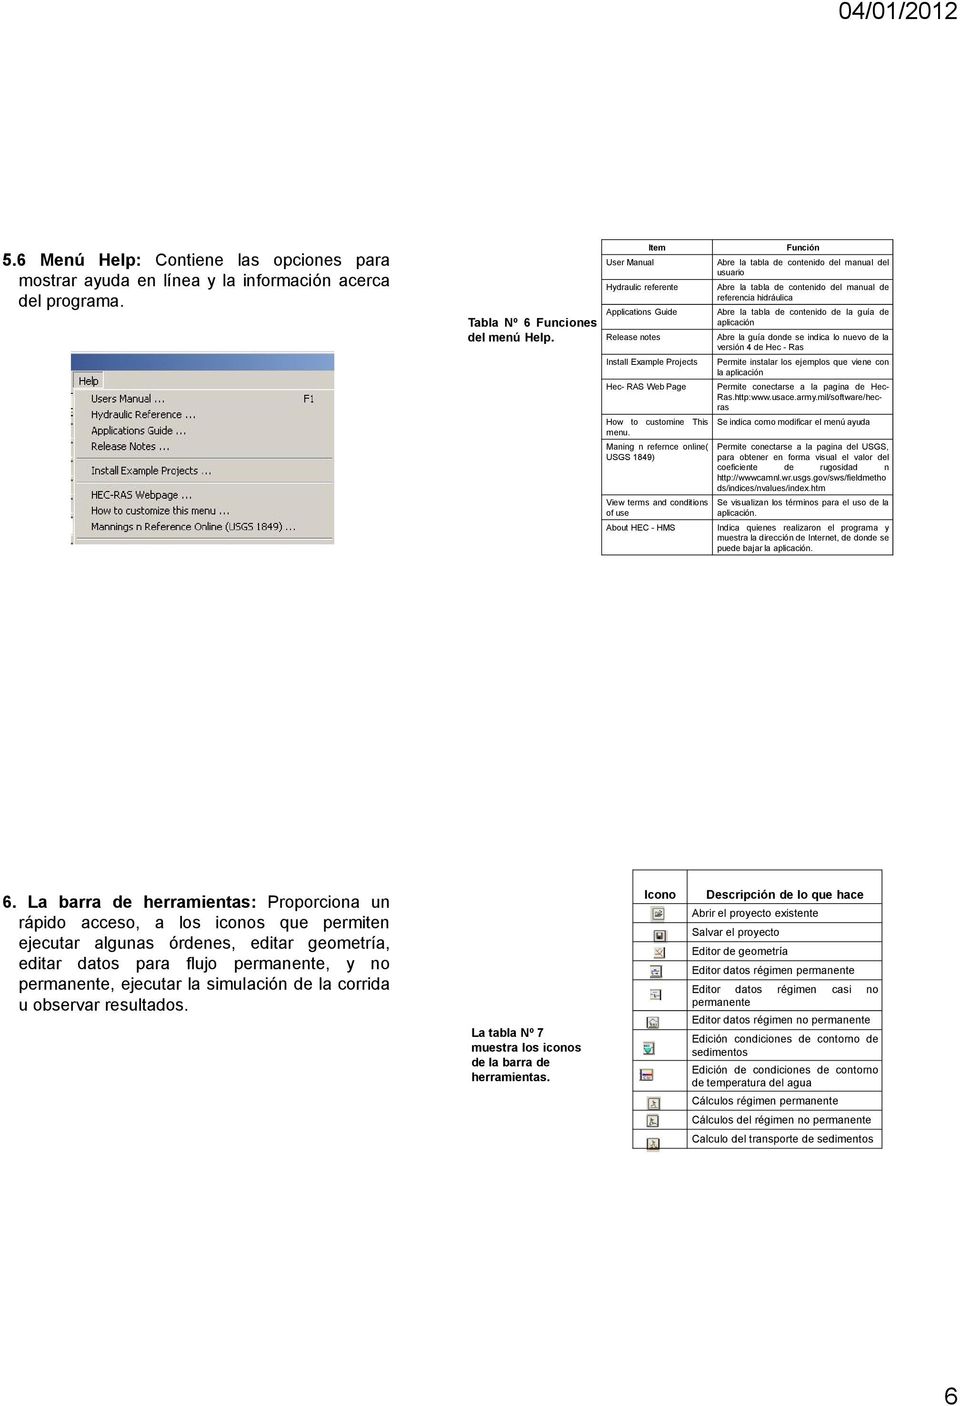 Maning n refernce online( USGS 1849) View terms and conditions of use About HEC - HMS Abre la tabla de contenido del manual del usuario Abre la tabla de contenido del manual de referencia hidráulica